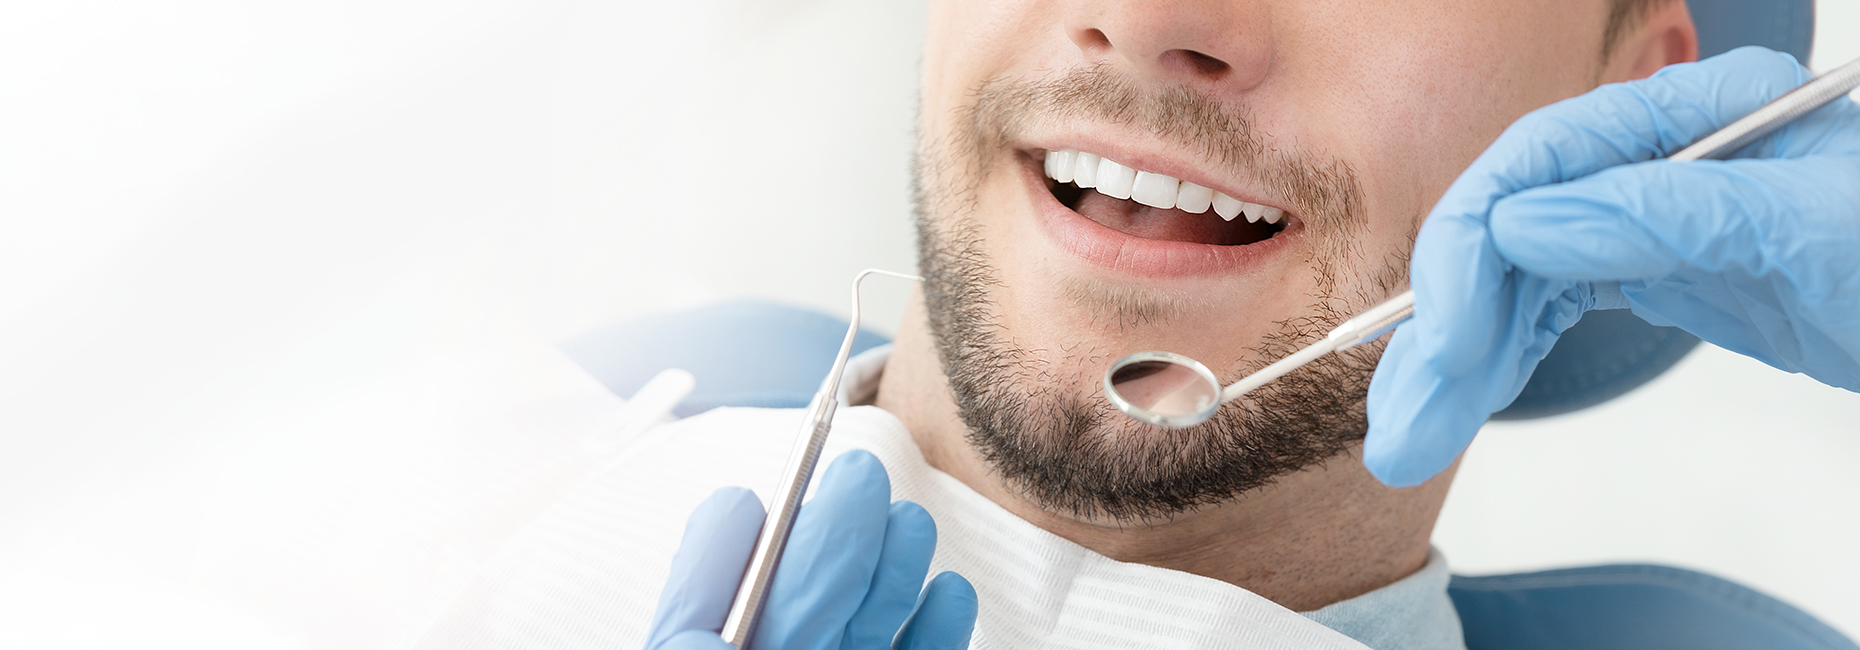 Professionelle Zahnreinigung für den Erhalt ihrer Zähne